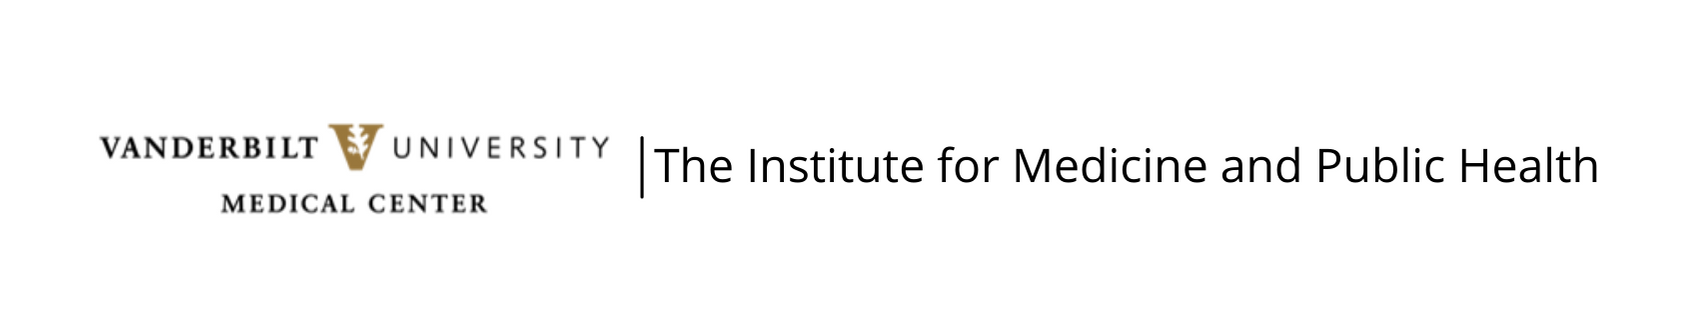 Vanderbilt Institute of Medicine and Public Health logo